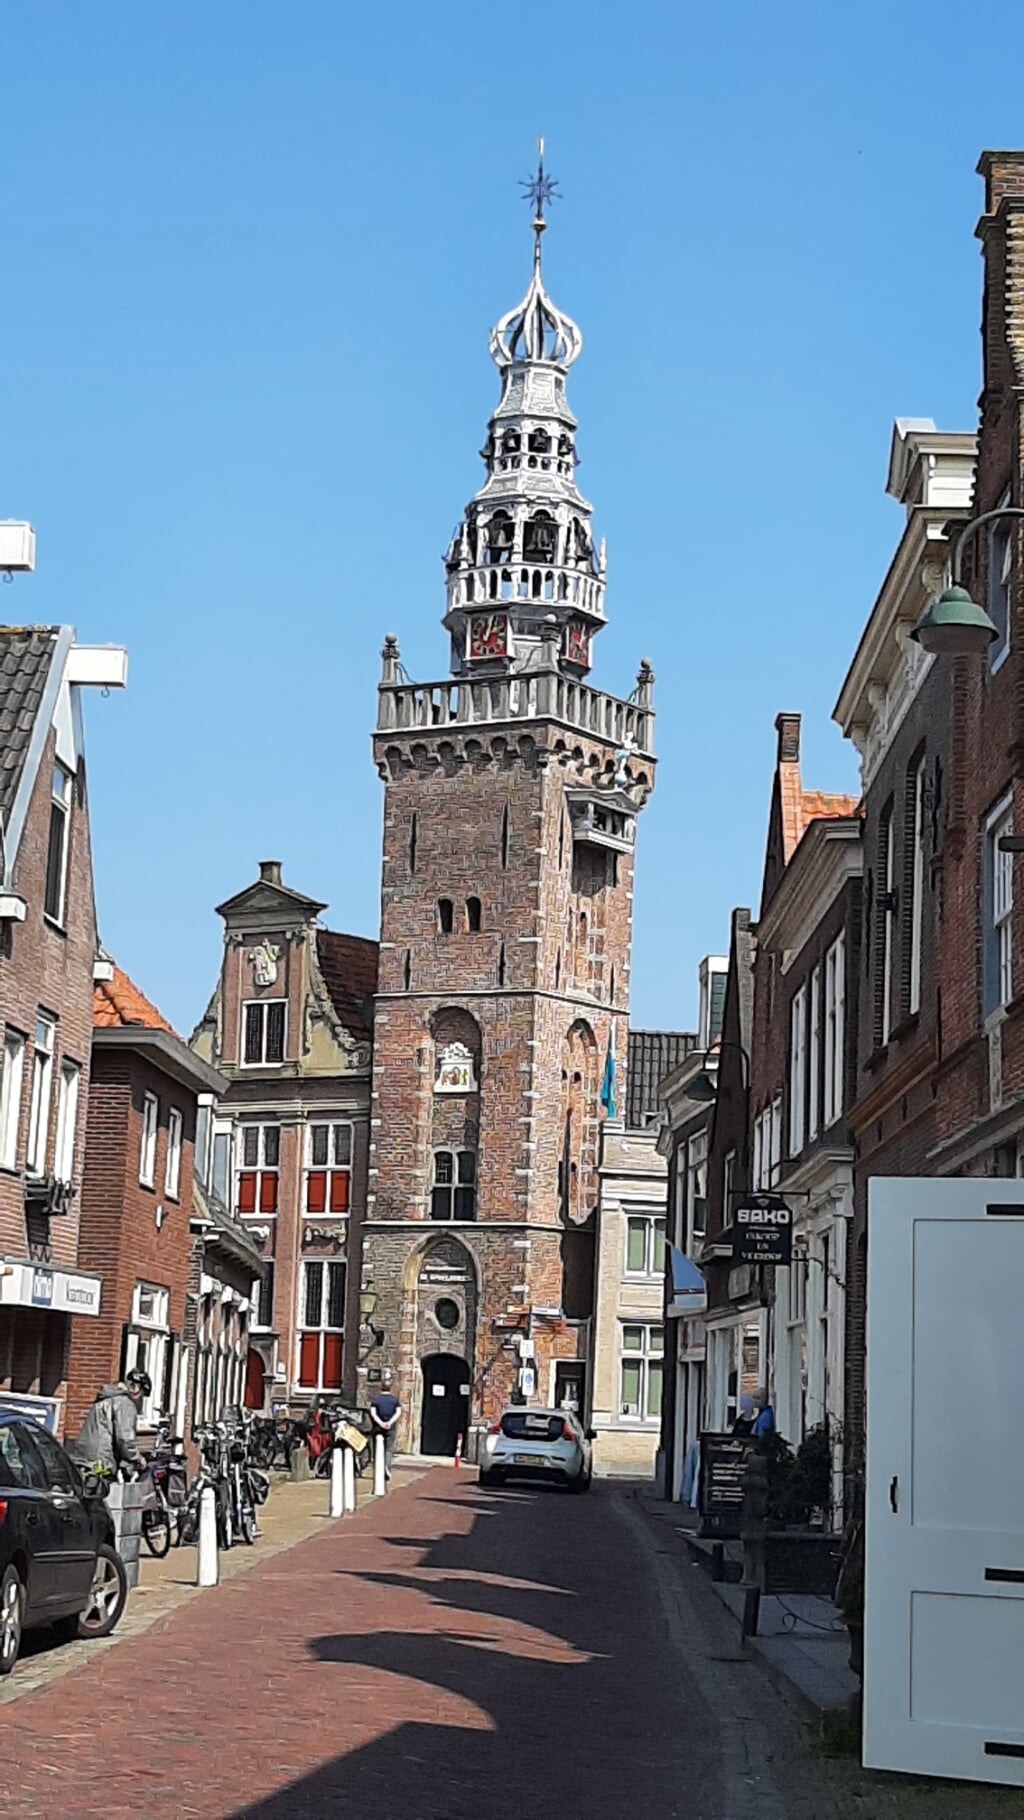 Op Koningsdag klinkt een muzikale groet uit De Speeltoren in Monnickendam. 